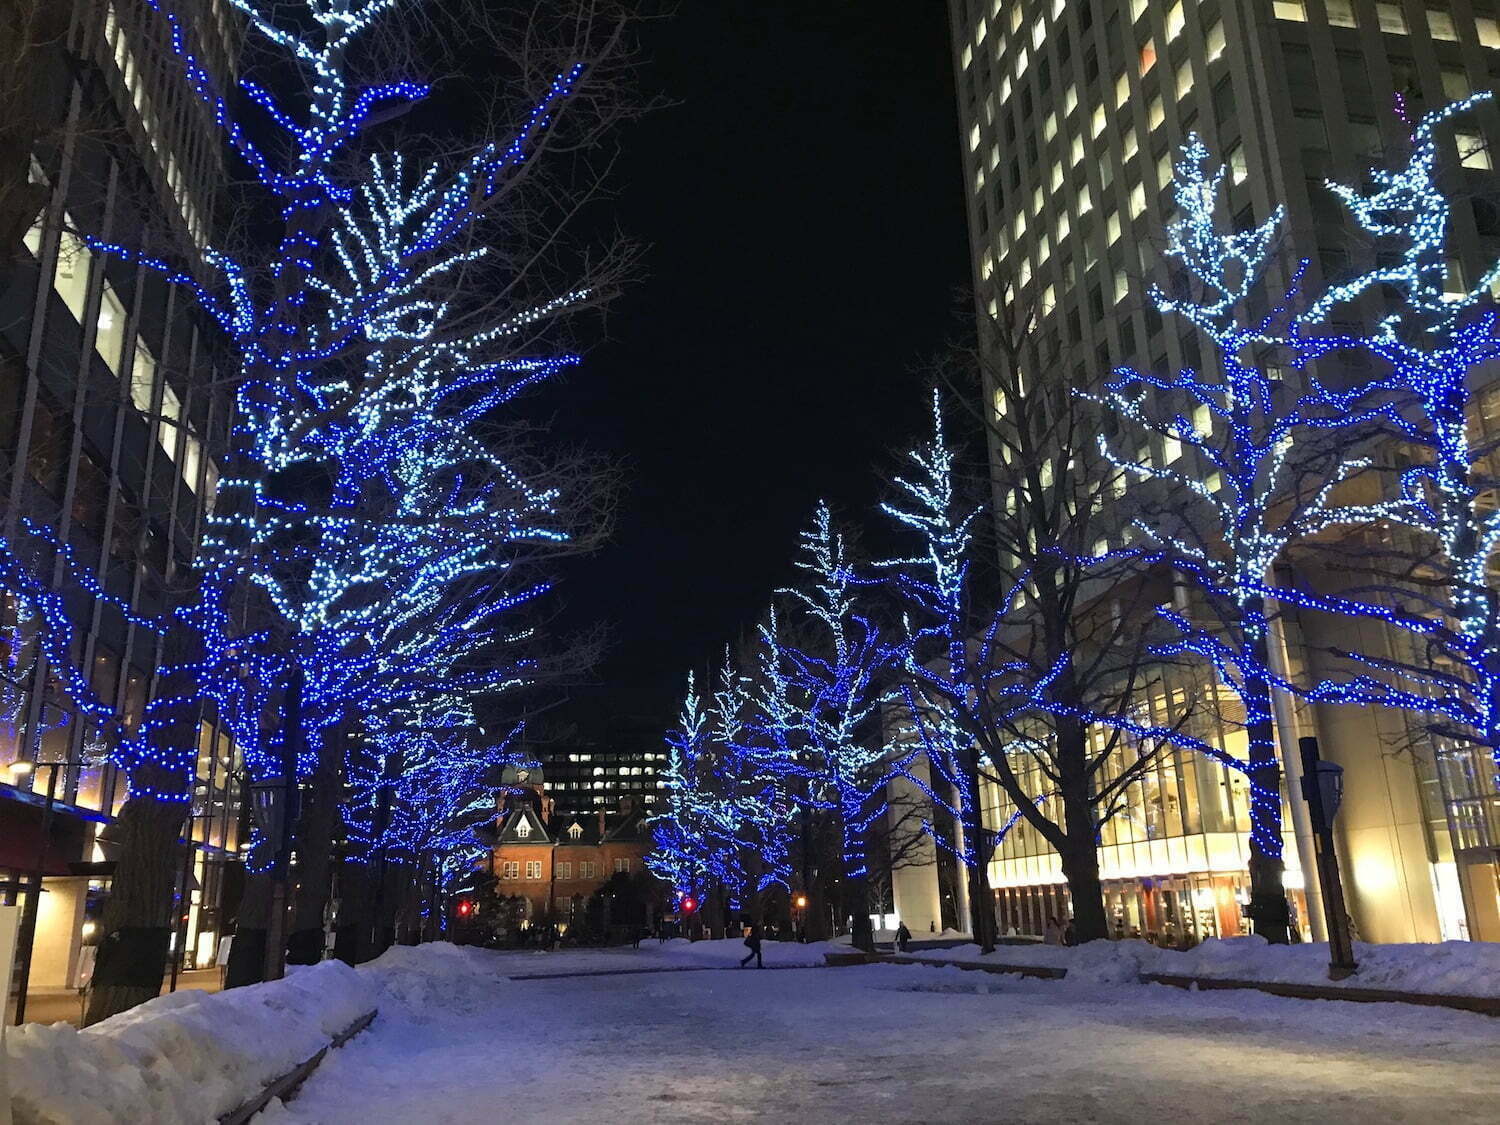 Sapporo city